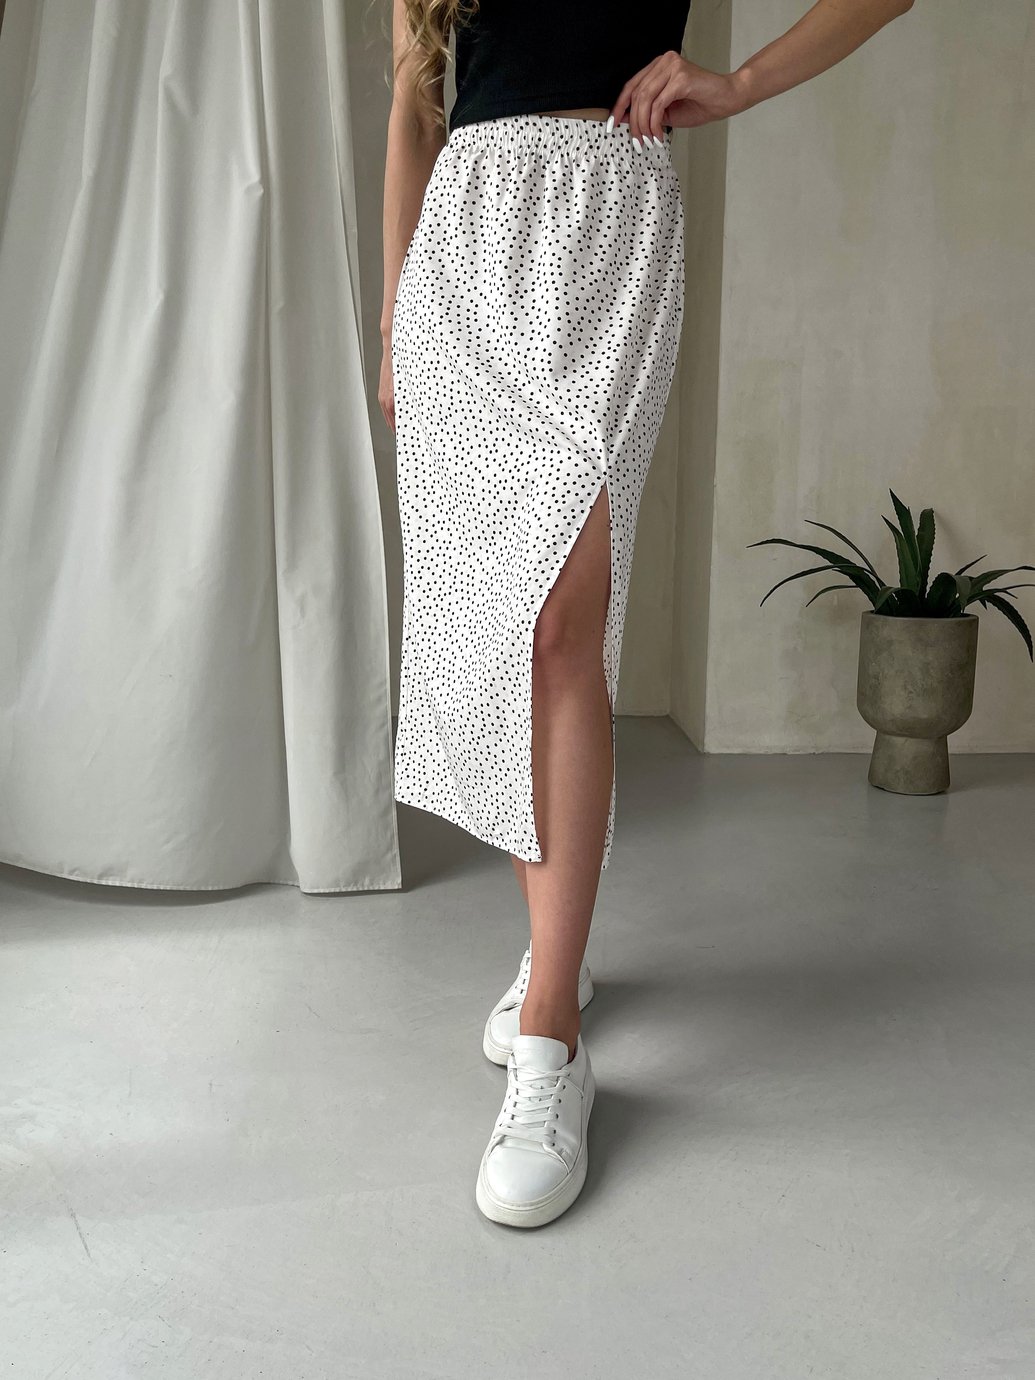 Купить Длинная женская юбка ниже колена с размером в горох Merlini Парма 400000102, размер 54-56 (4XL-5XL) в интернет-магазине